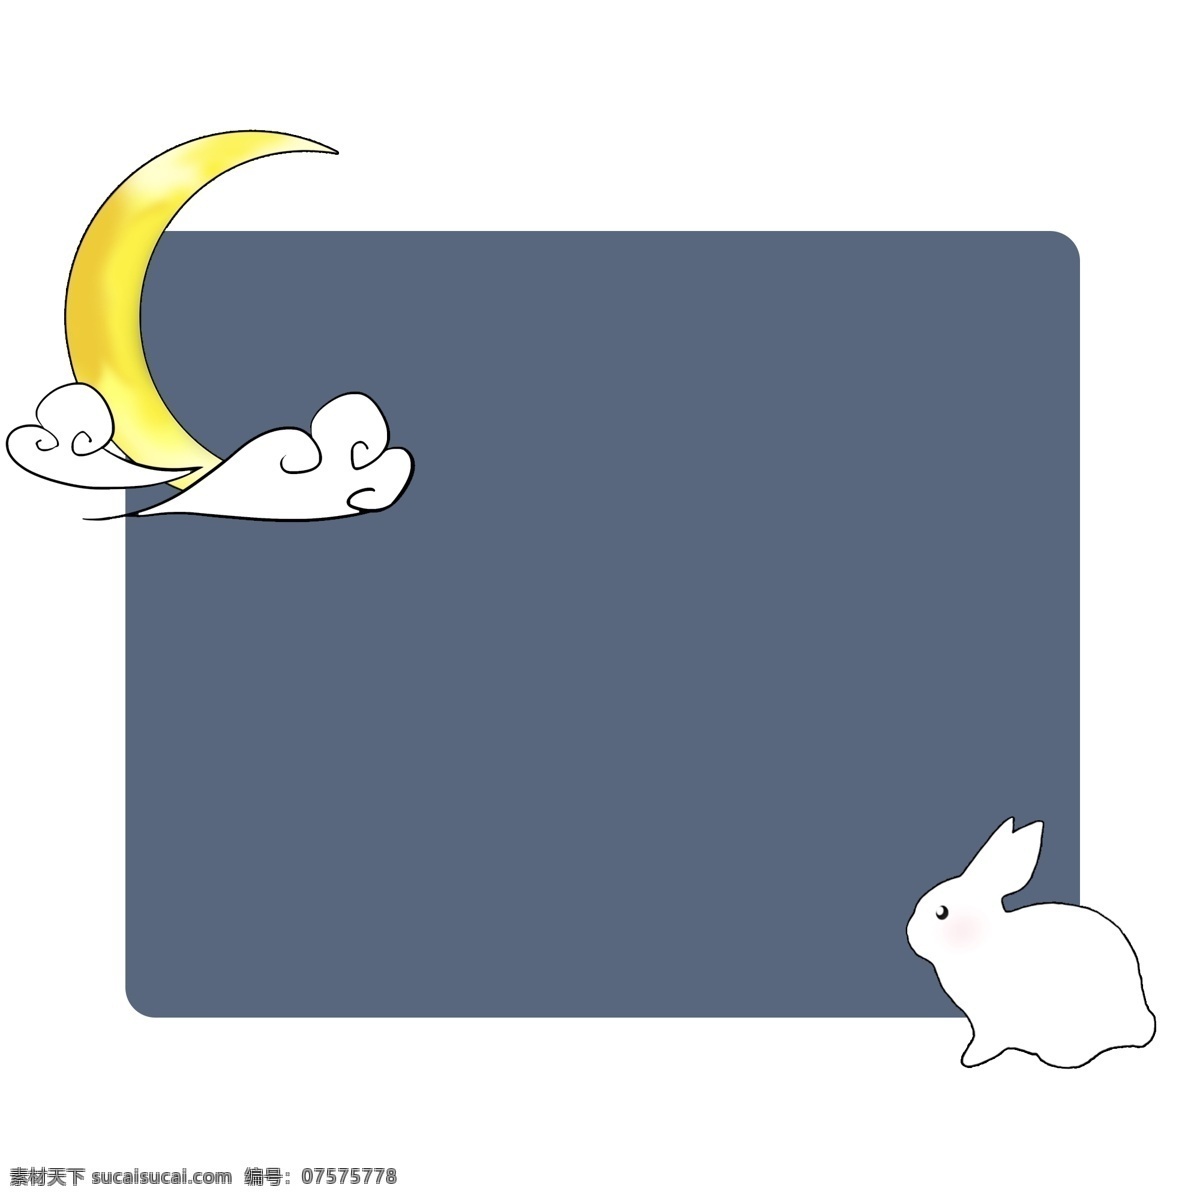 玉兔 月亮 相框 插画 小白兔相框 月亮相框 黄色月 亮 白云祥云相框 蓝色长形相框 玉兔相框